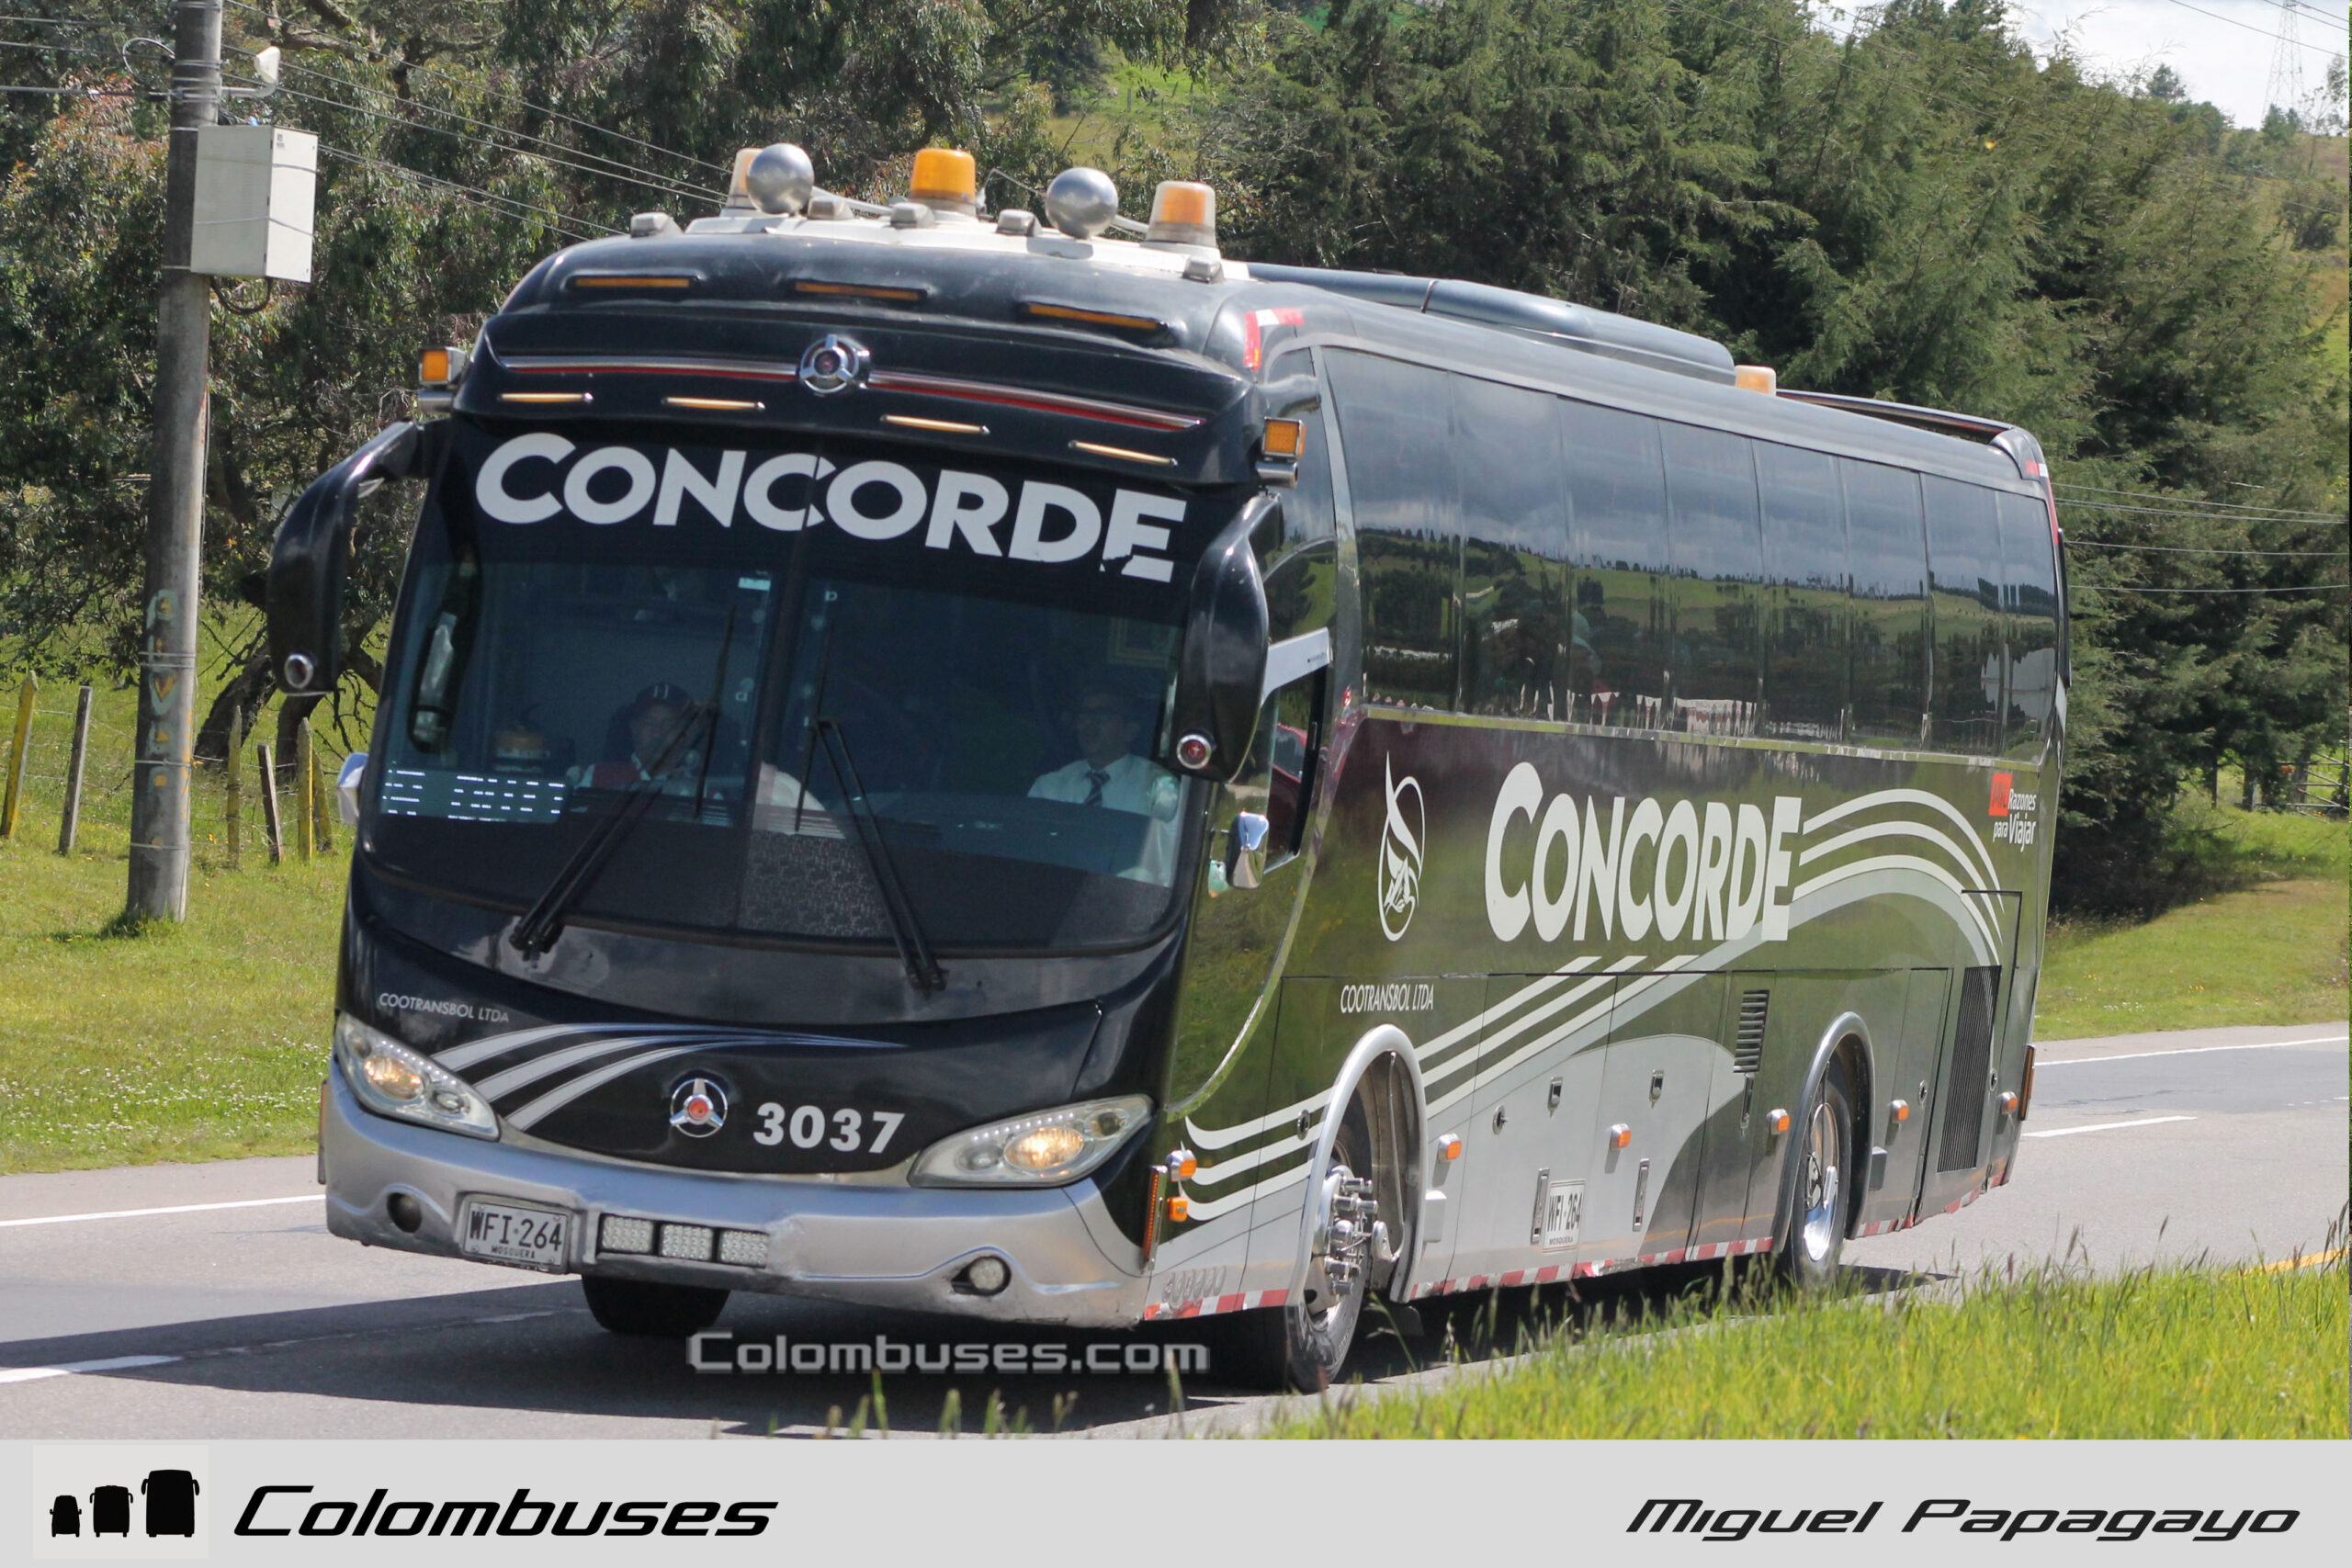 Cootransbol - Concorde